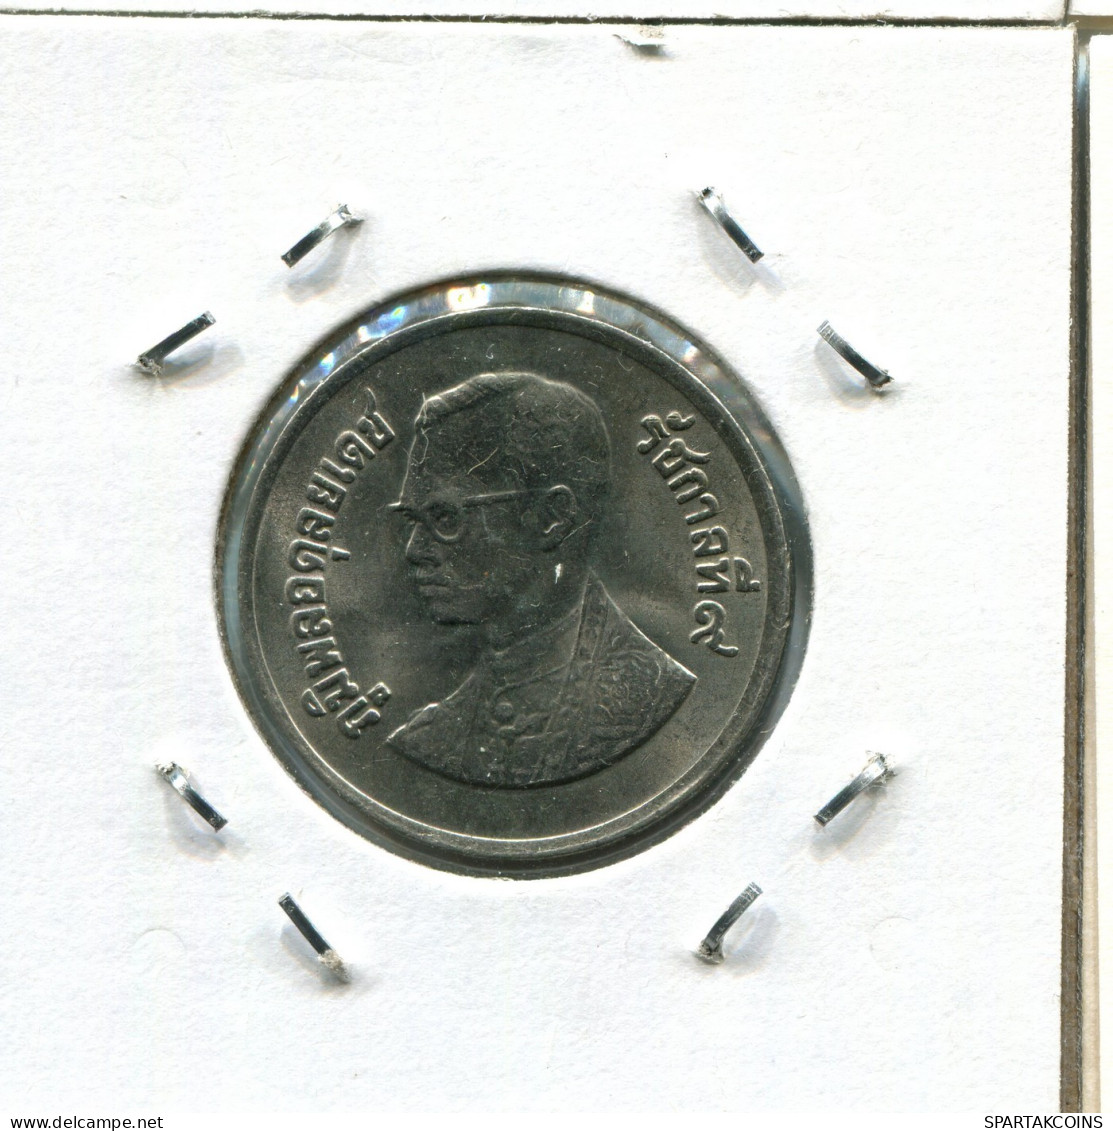 1 BAHT 1982 THAILAND RAMA IX Coin #AX267.U.A - Tailandia